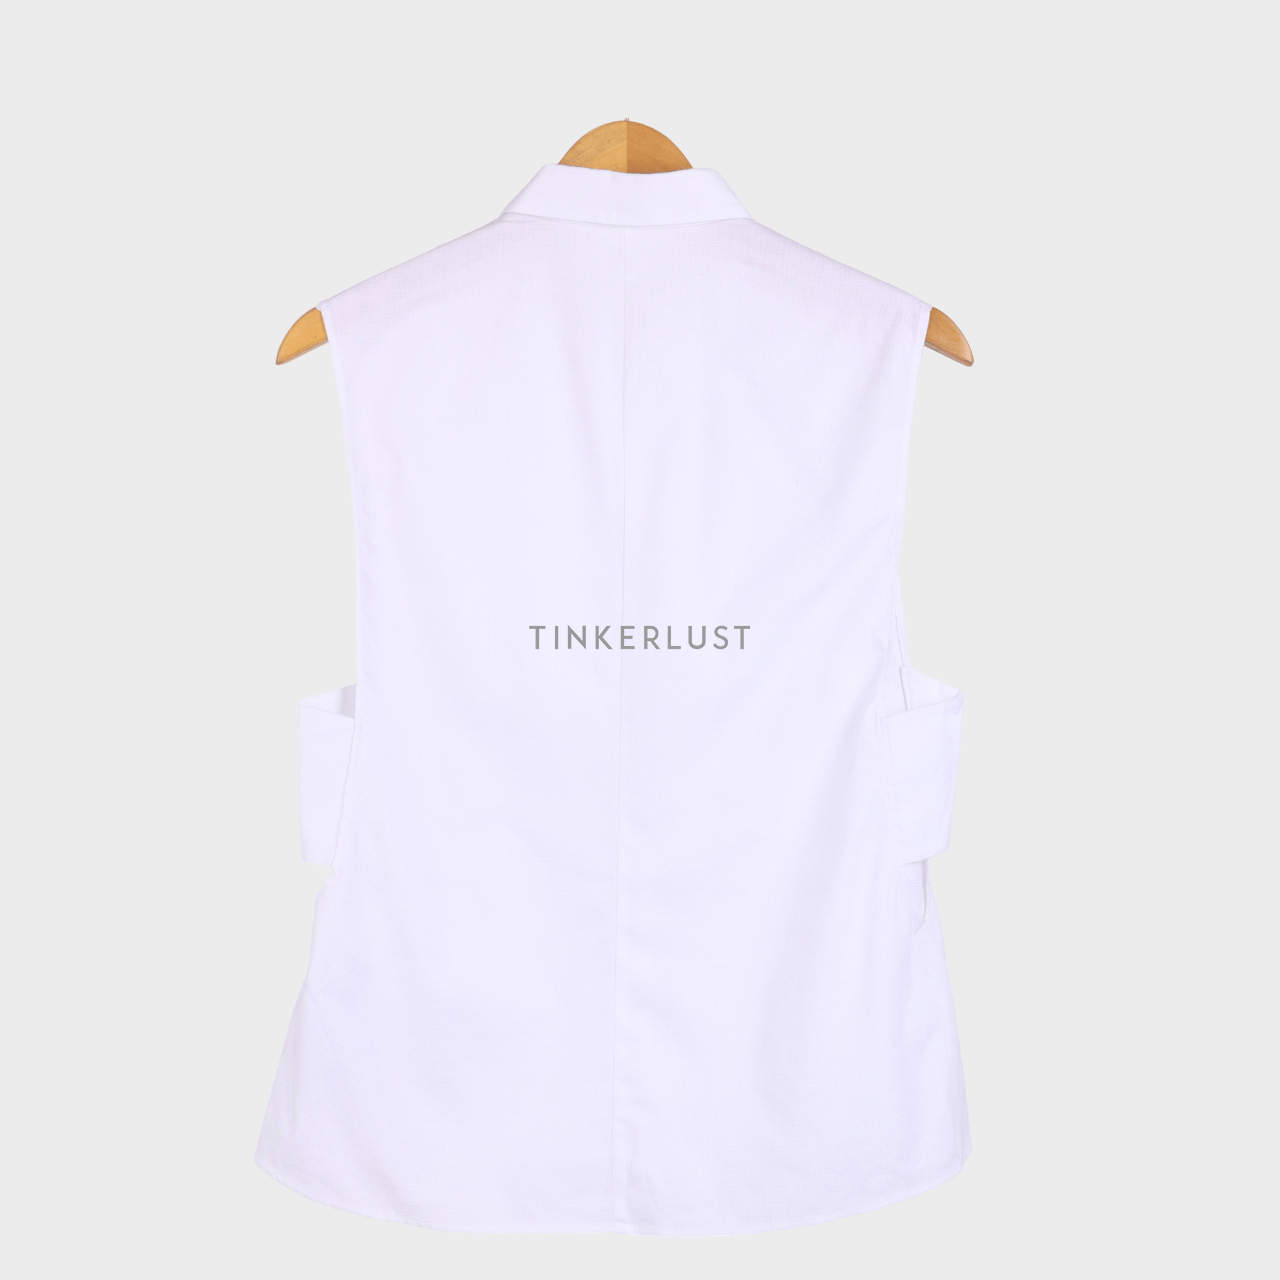 Zara White Shirt Sleeveless